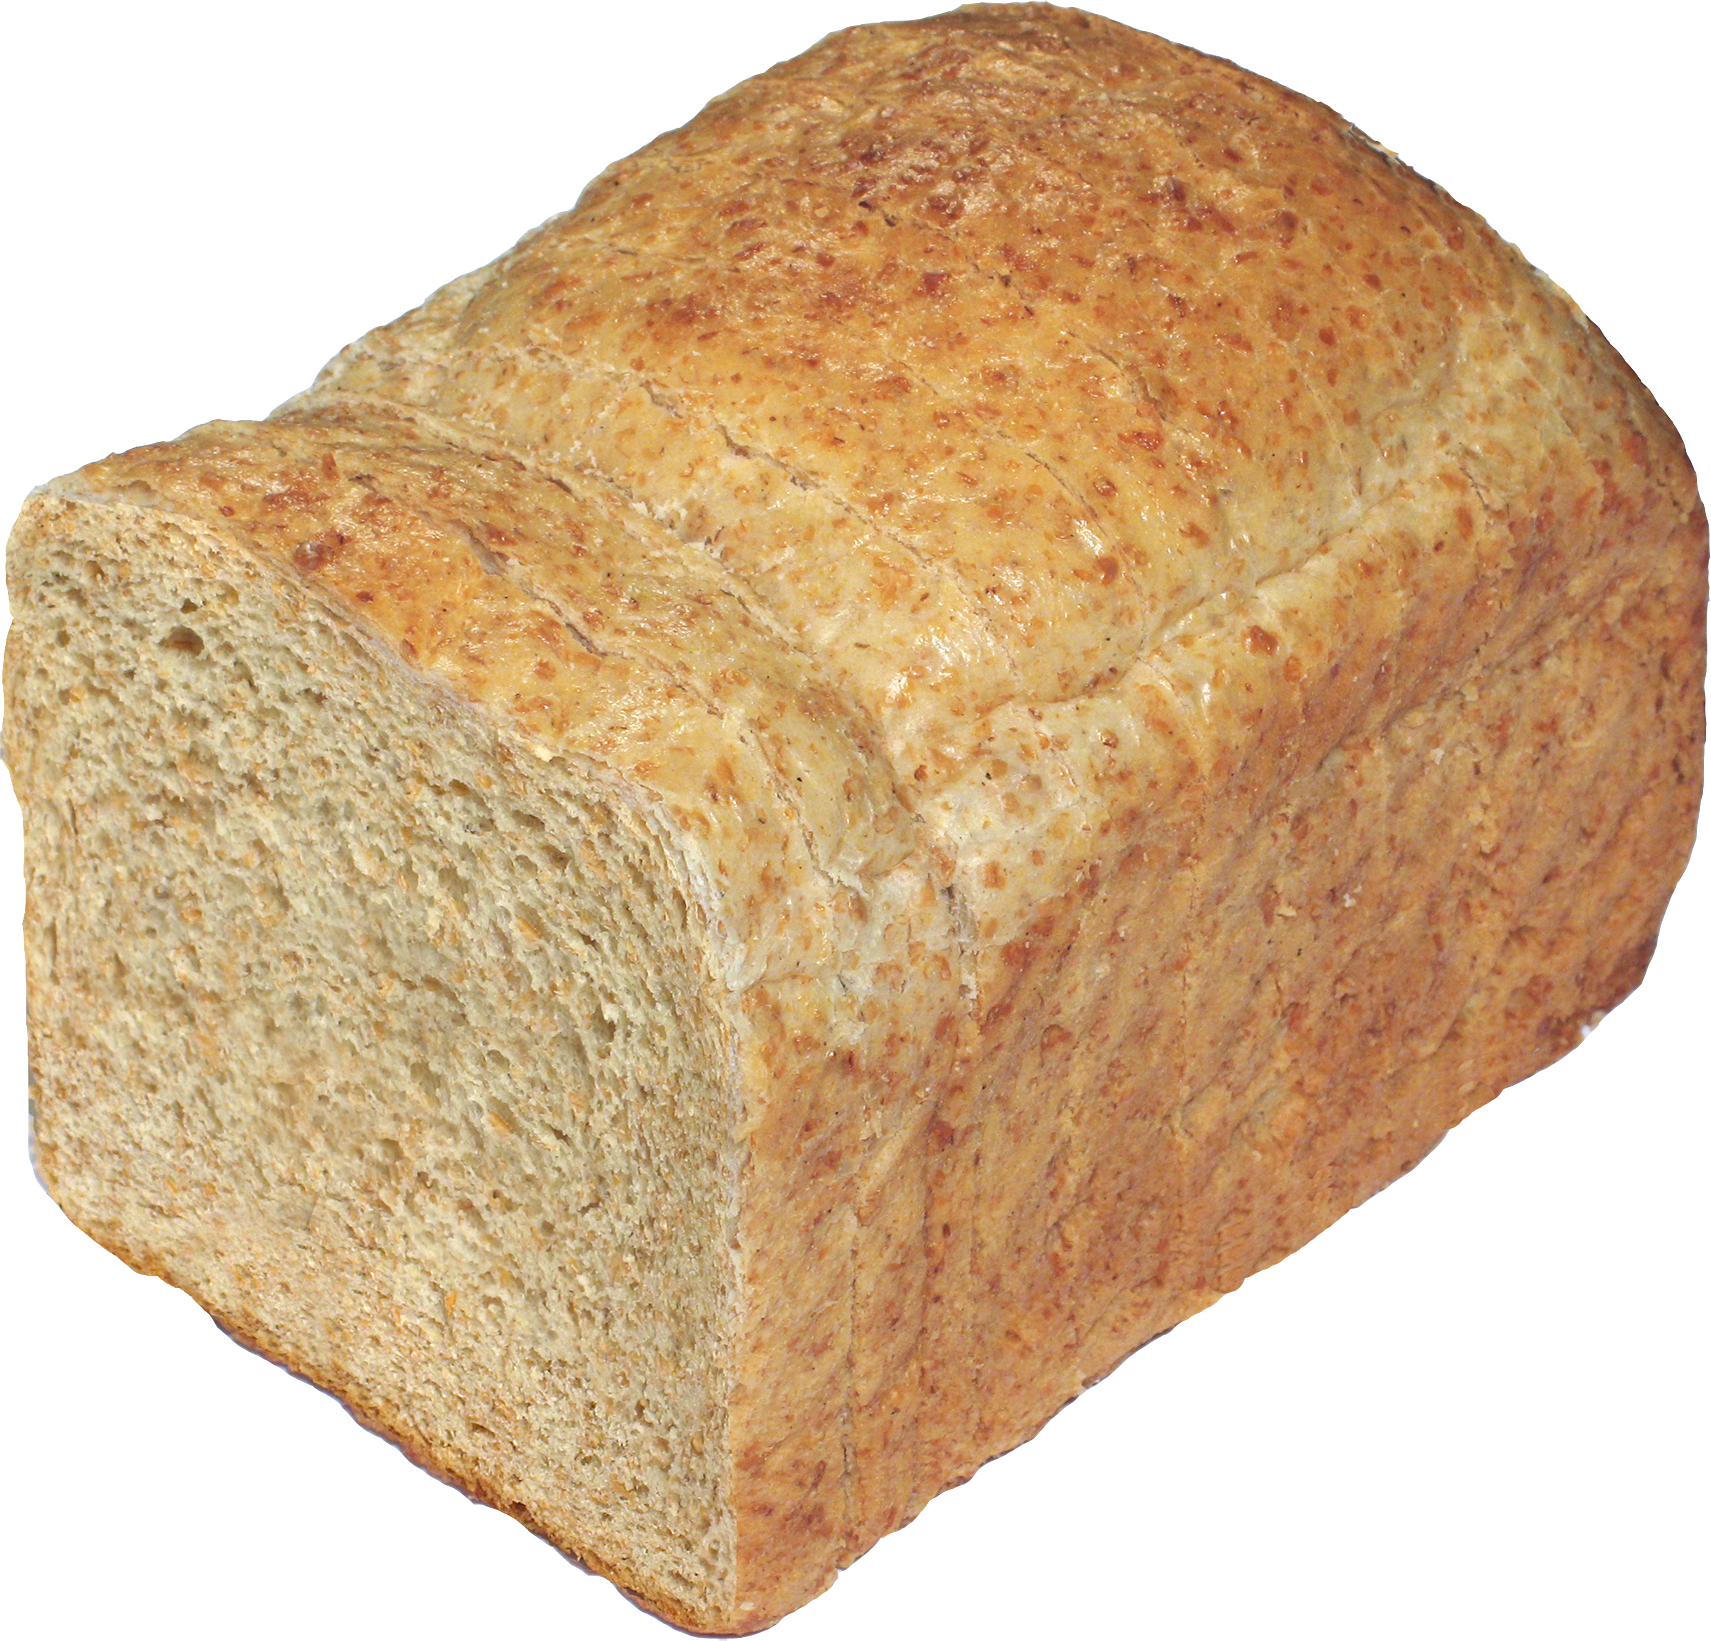 Susamlı ekmek